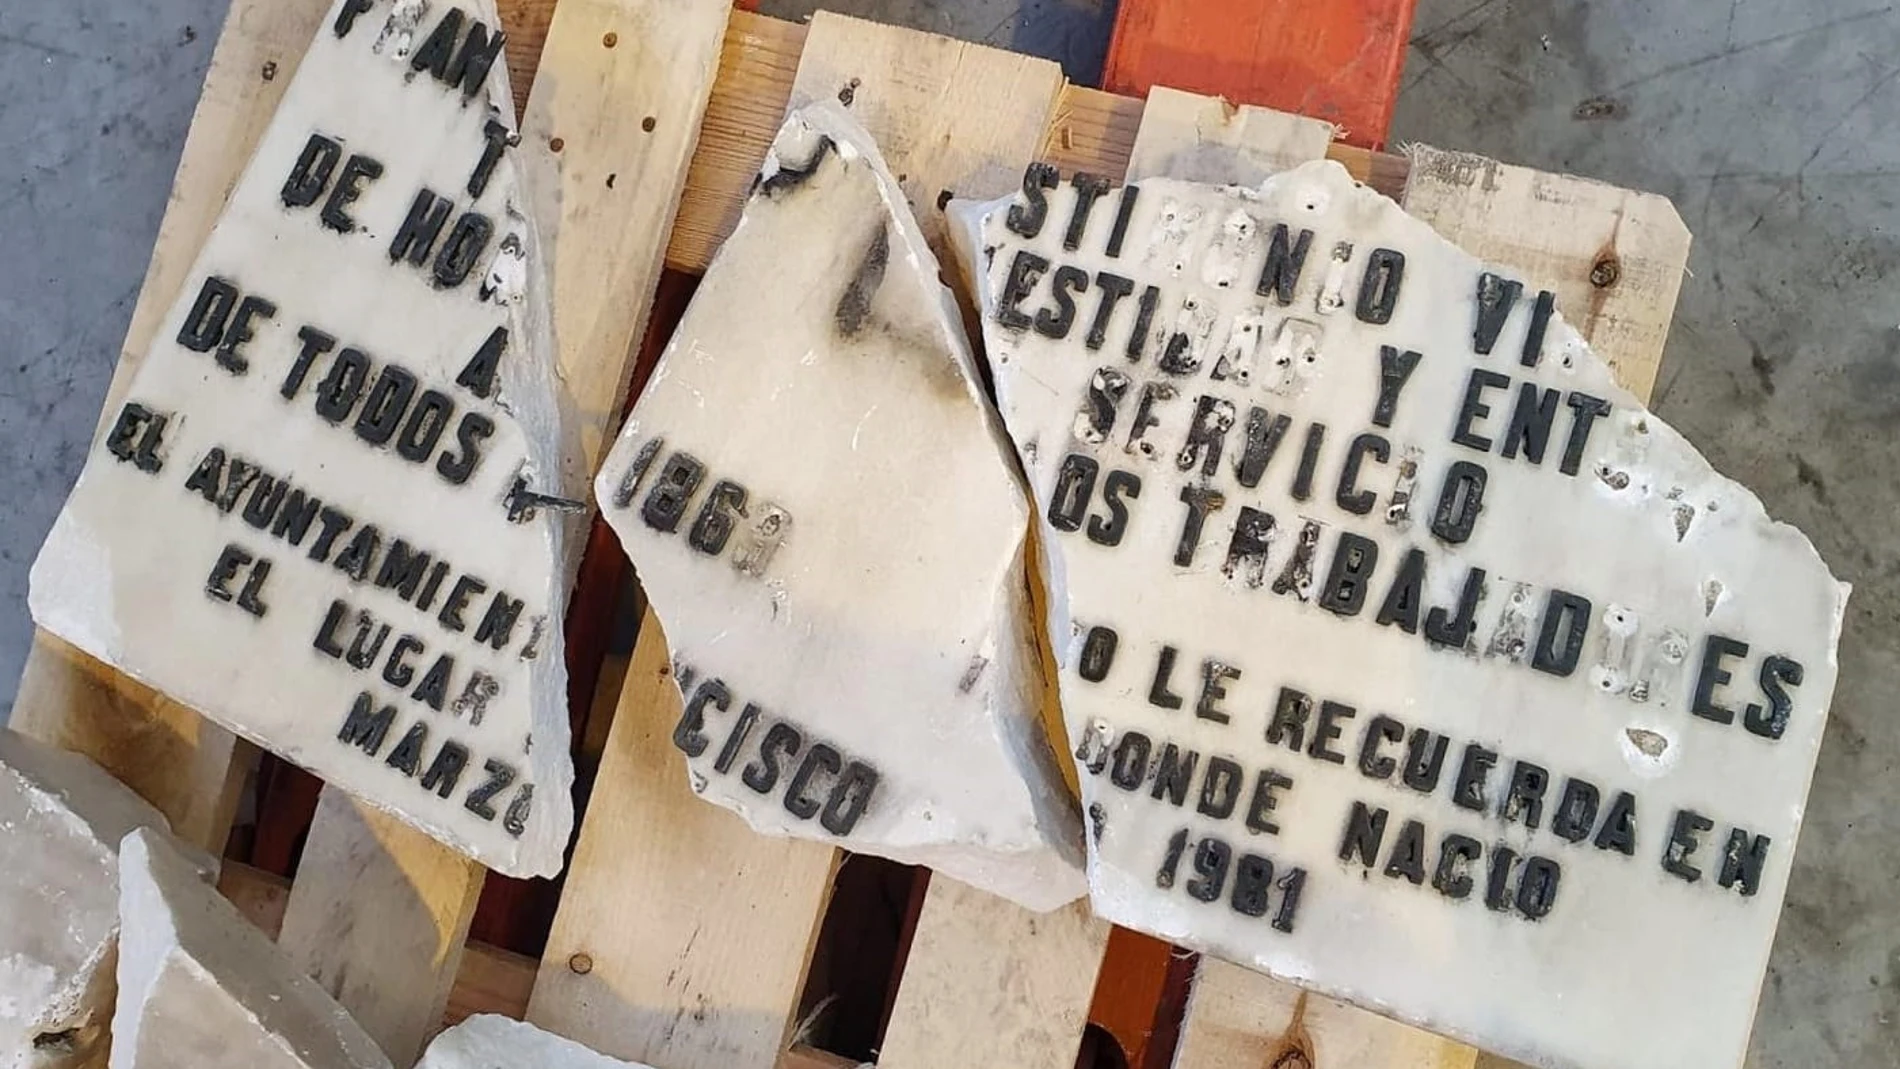 Placa dañada que fue retirada de la vivienda donde vivió Largo Caballero05/11/2020